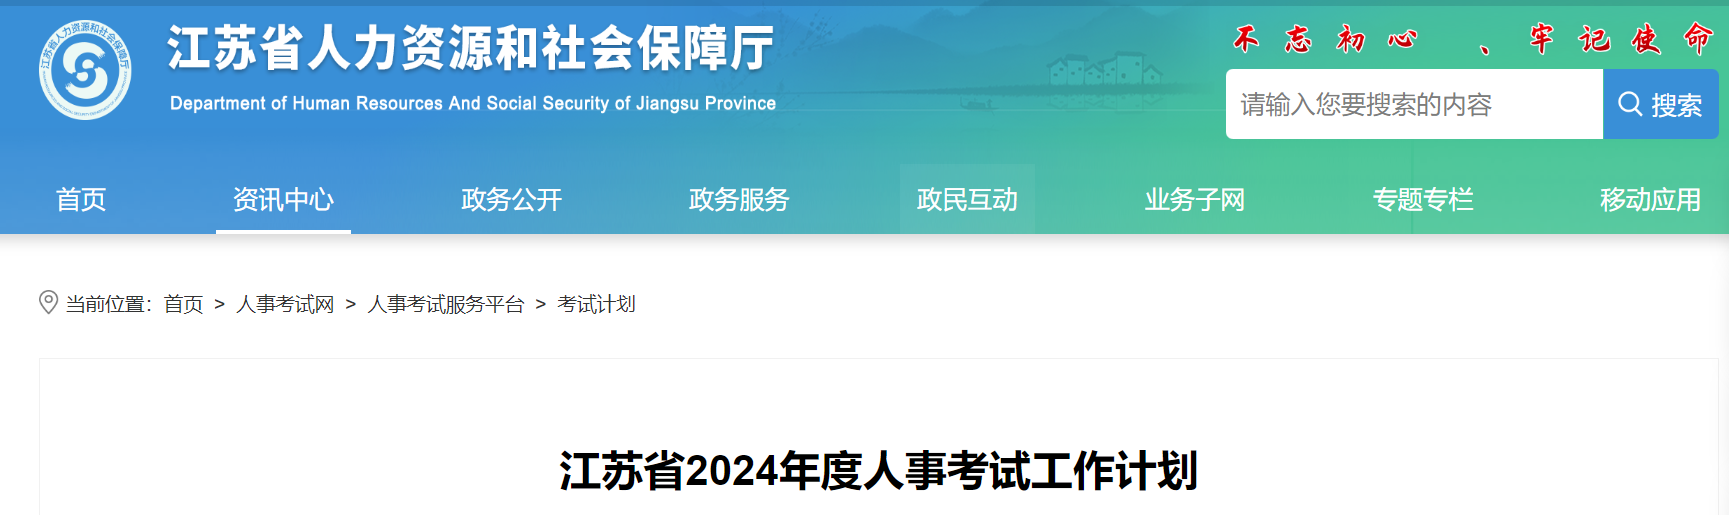 江苏省2024年度人事考试工作计划